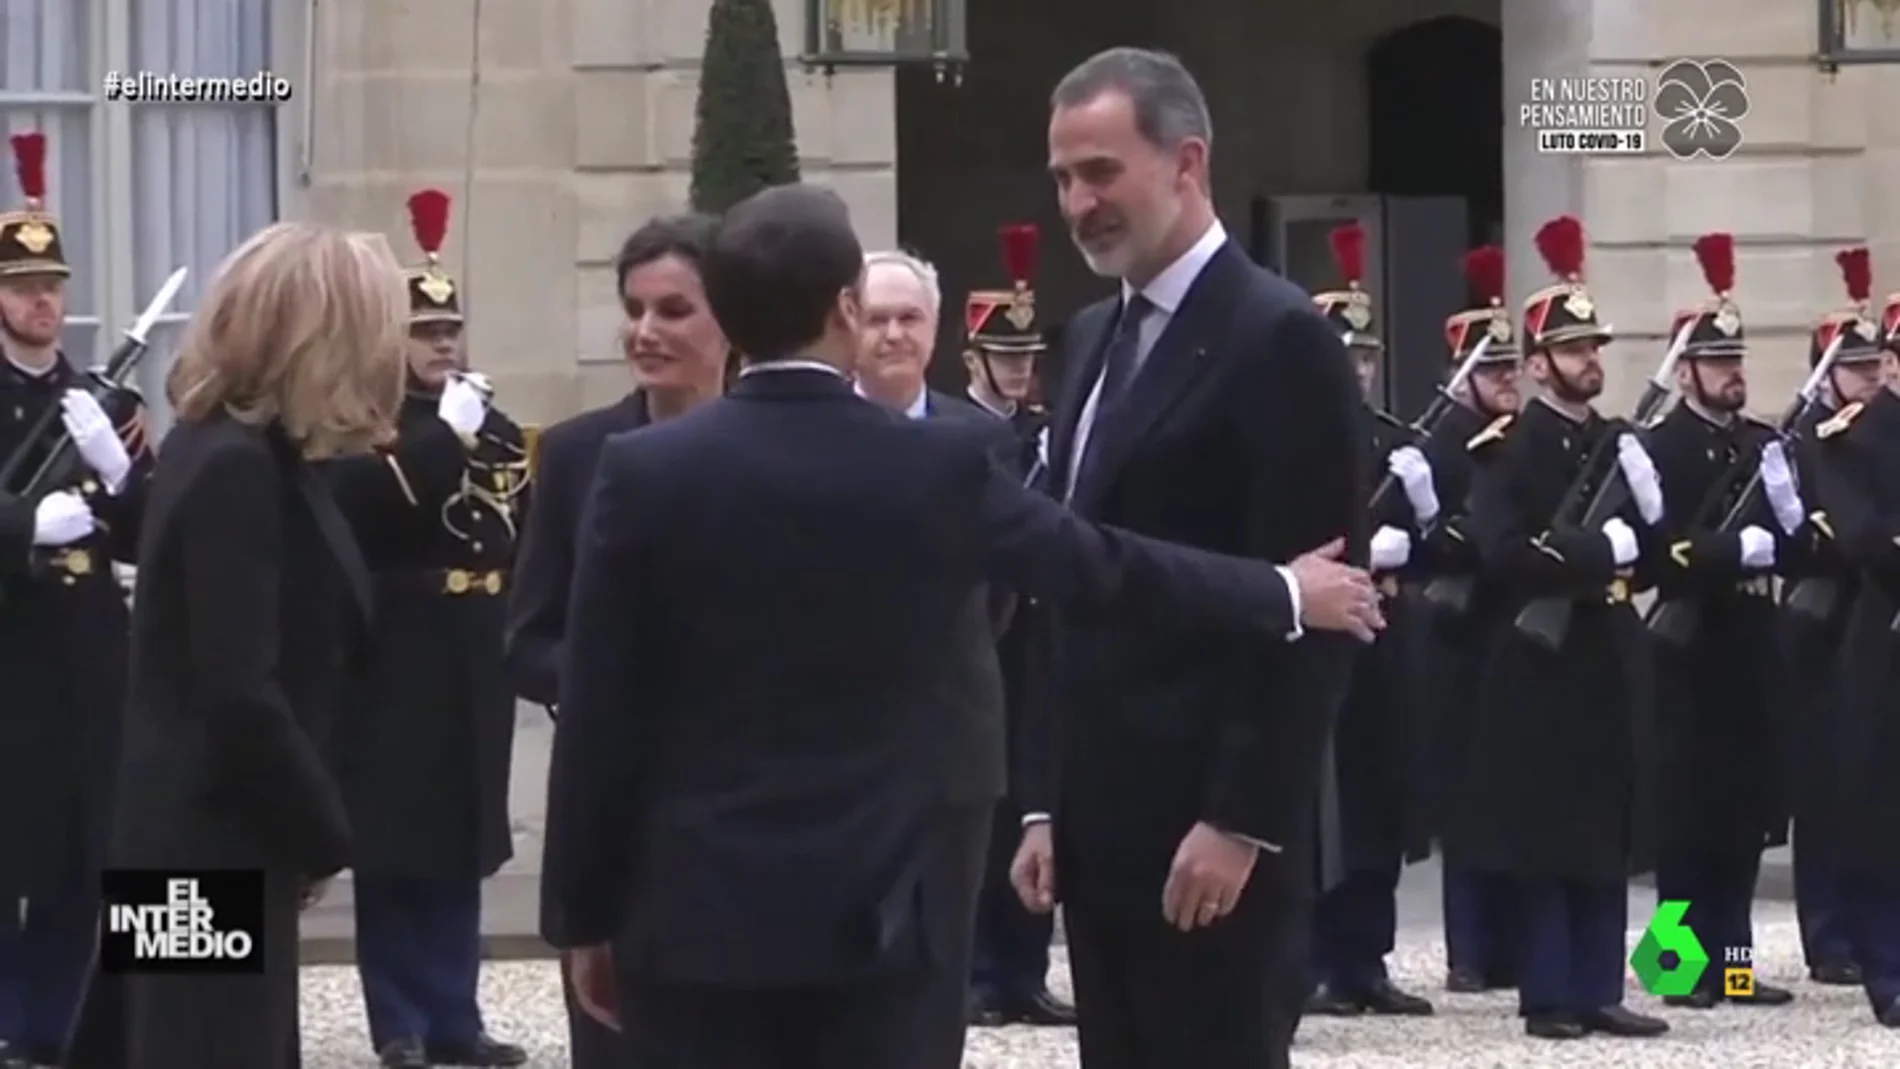 Vídeo manipulado - El inesperado grito del rey Felipe cuando Macron le da en el brazo: "¡No me toques, mierda!"